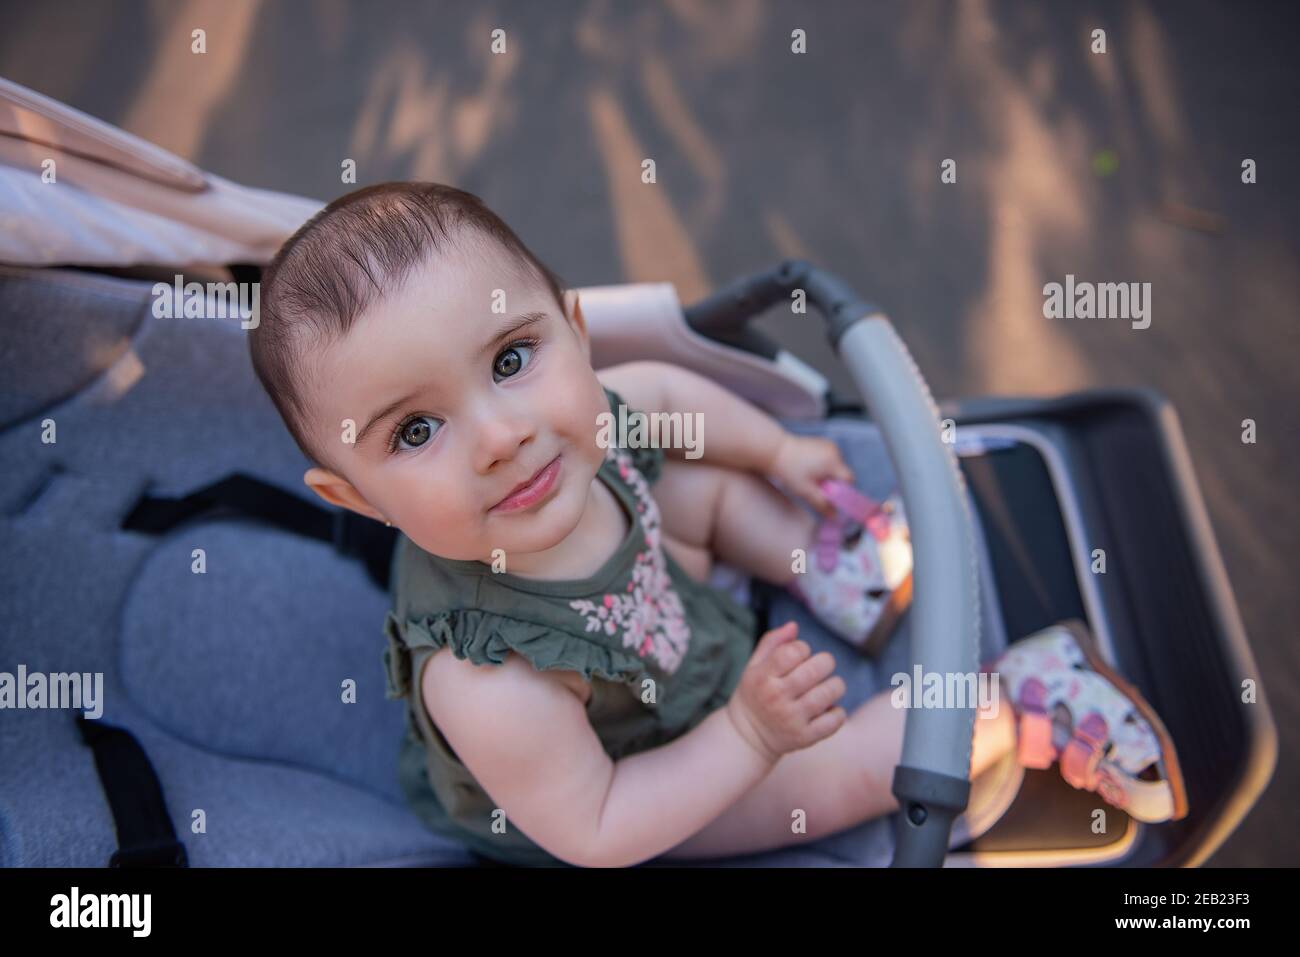 Una bambina carina con gli occhi verdi in un abito si siede in un passeggino in un parco verde. Ritratto in primo piano di un bambino che guarda nella fotocamera. Copia s Foto Stock